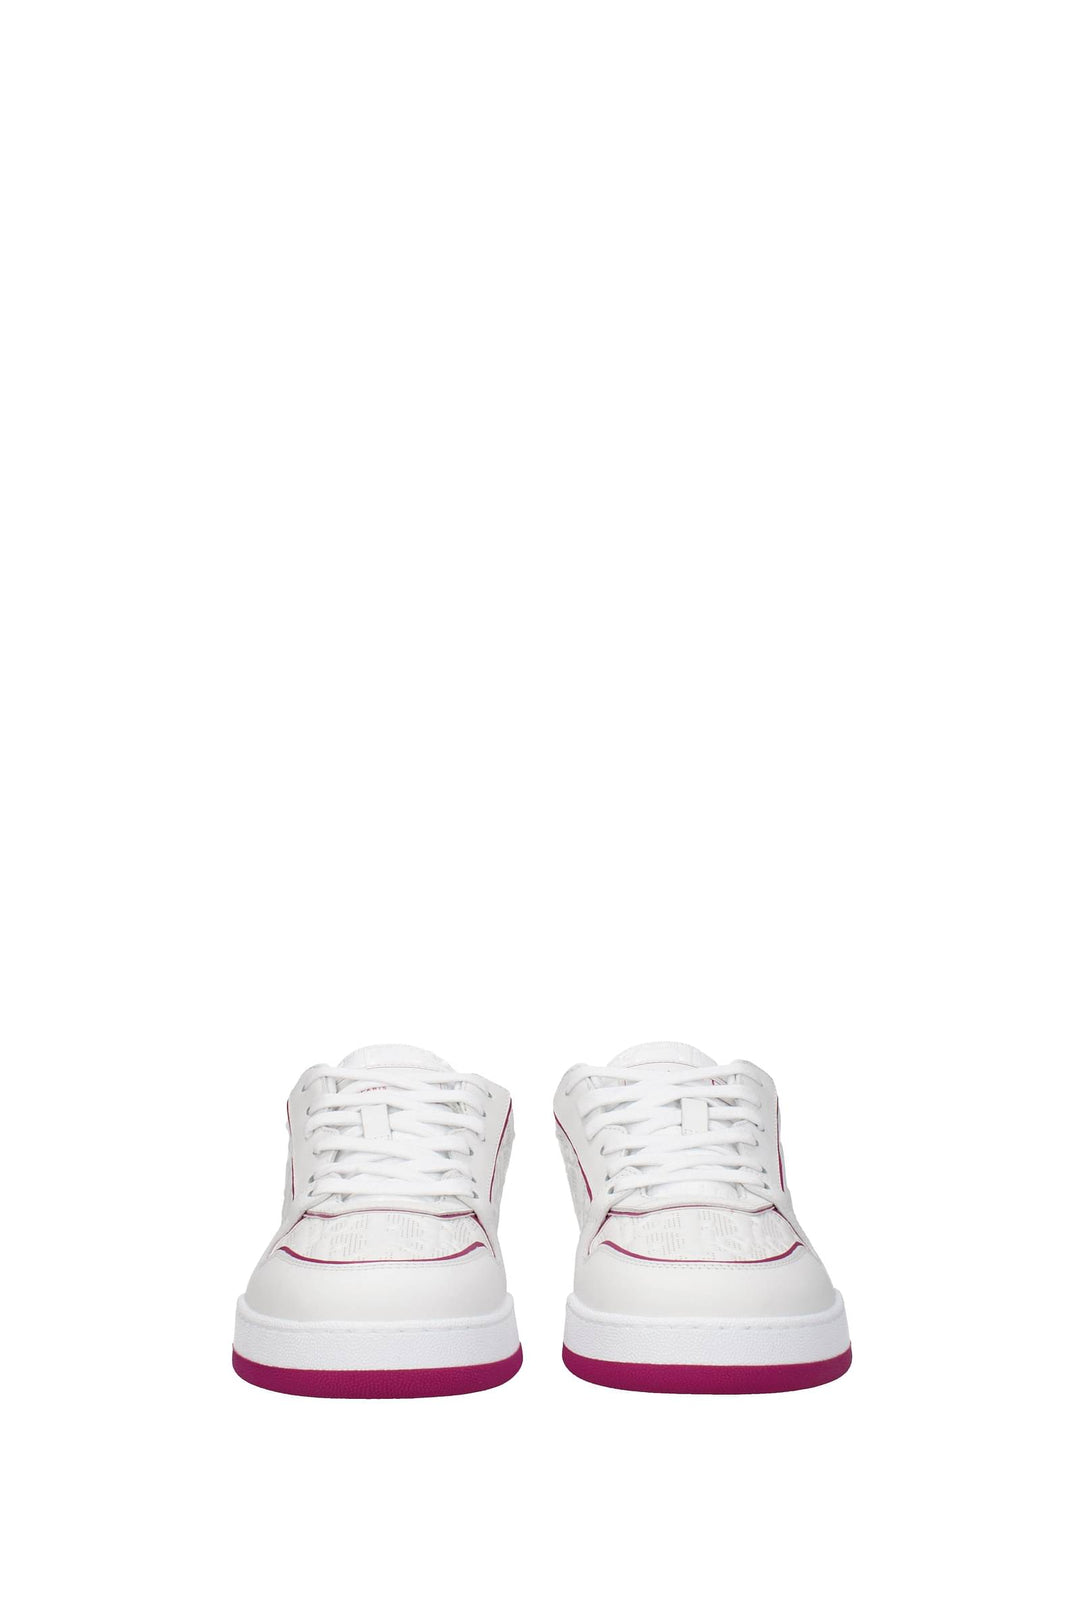 Sneakers Oblique Pelle Bianco Fuxia - Christian Dior - Donna